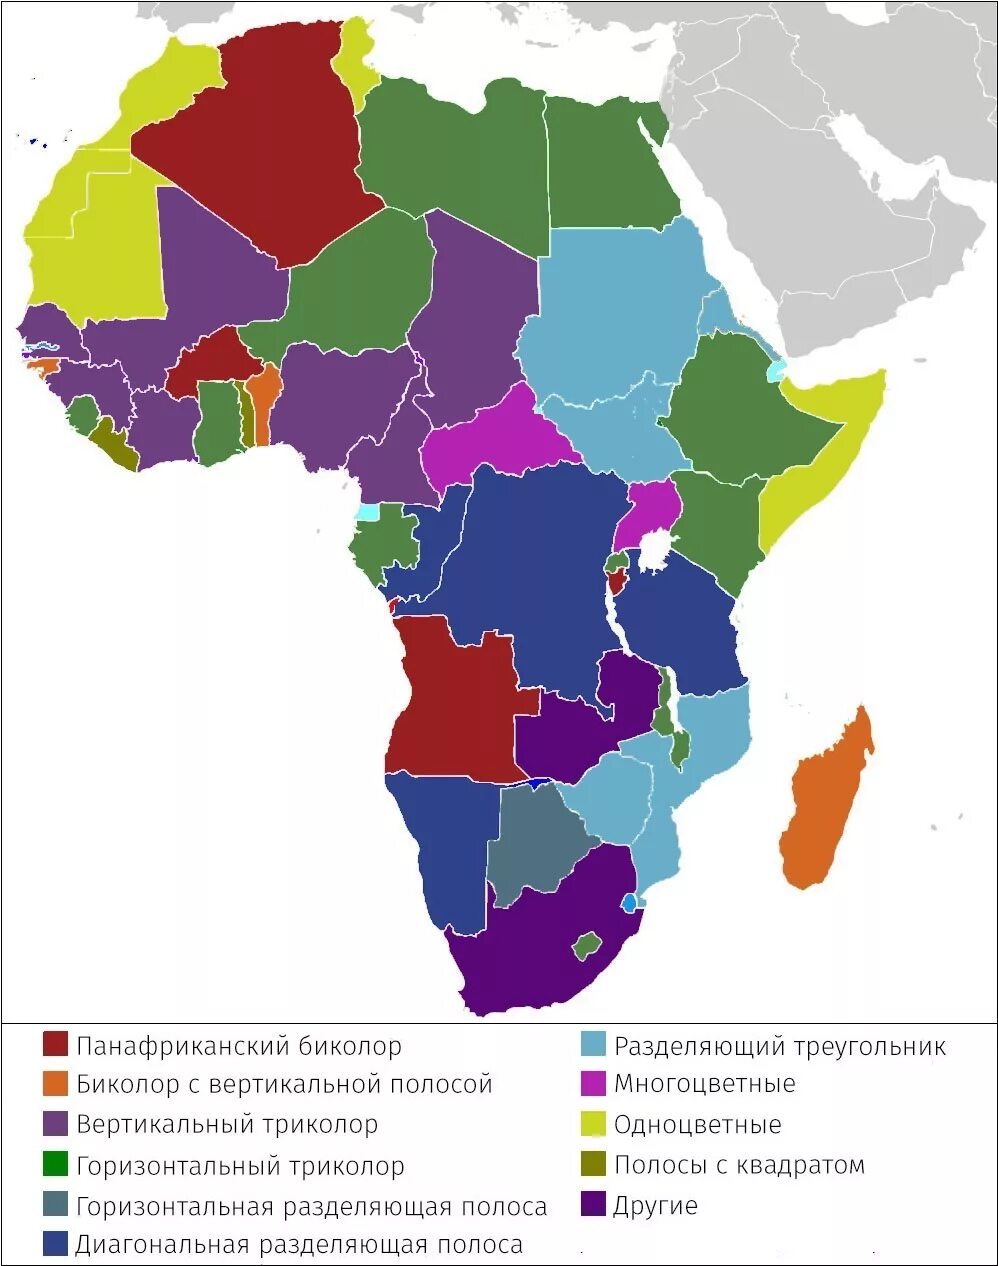 Панафриканизм. Панафриканские цвета. Карта Африки с флагами и названиями. Флаги регионов Африки. Африка в панафриканских цветах.